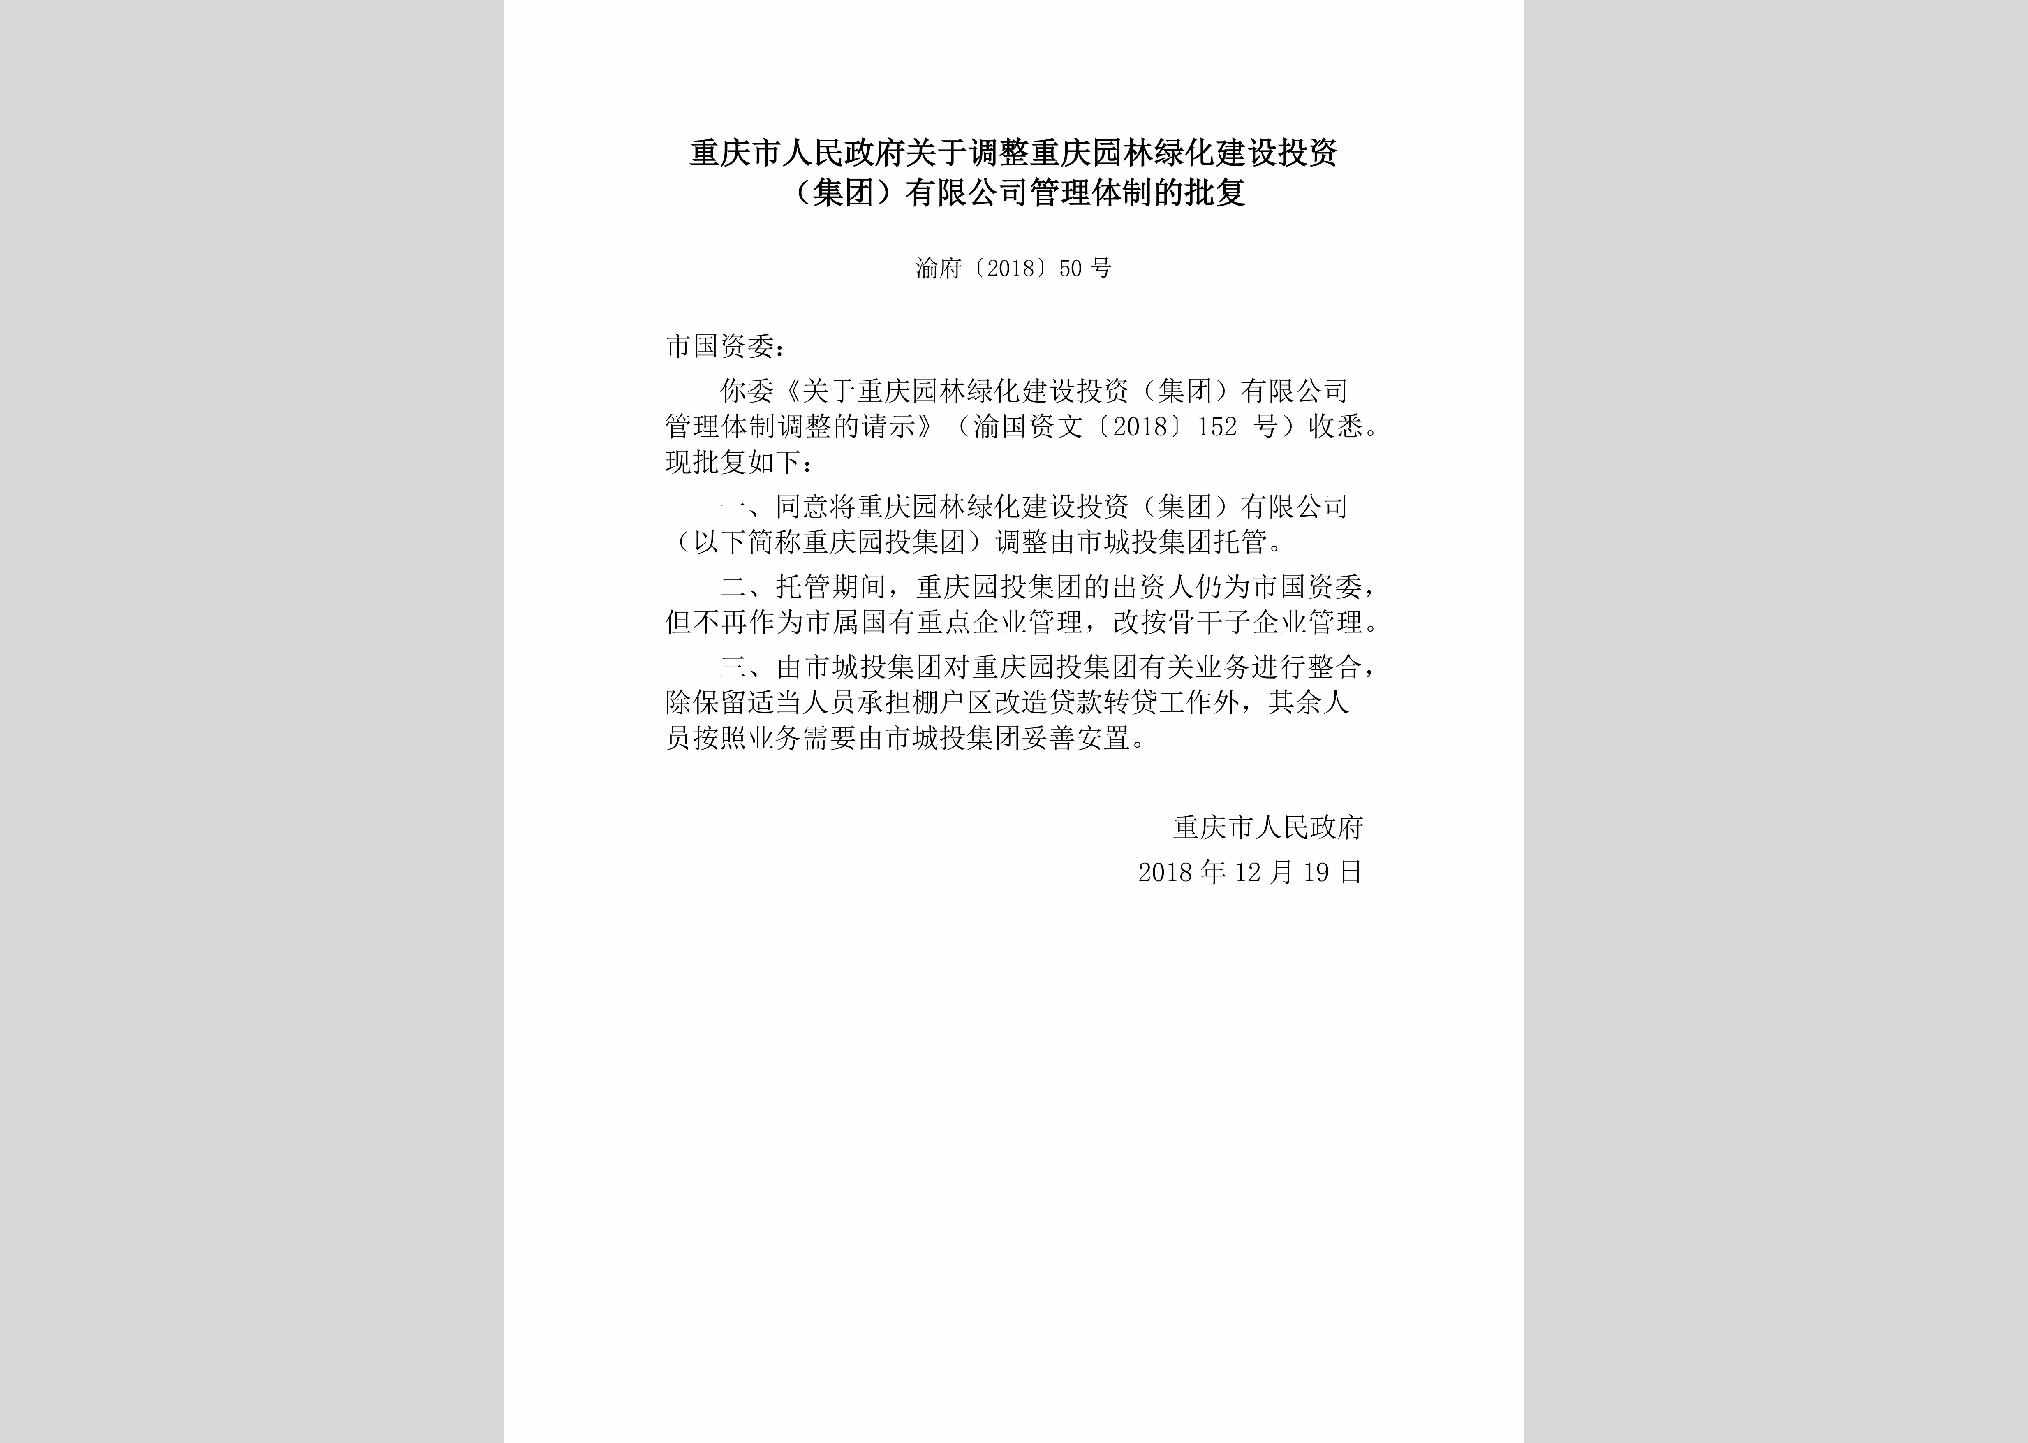 渝府[2018]50号：重庆市人民政府关于调整重庆园林绿化建设投资（集团）有限公司管理体制的批复